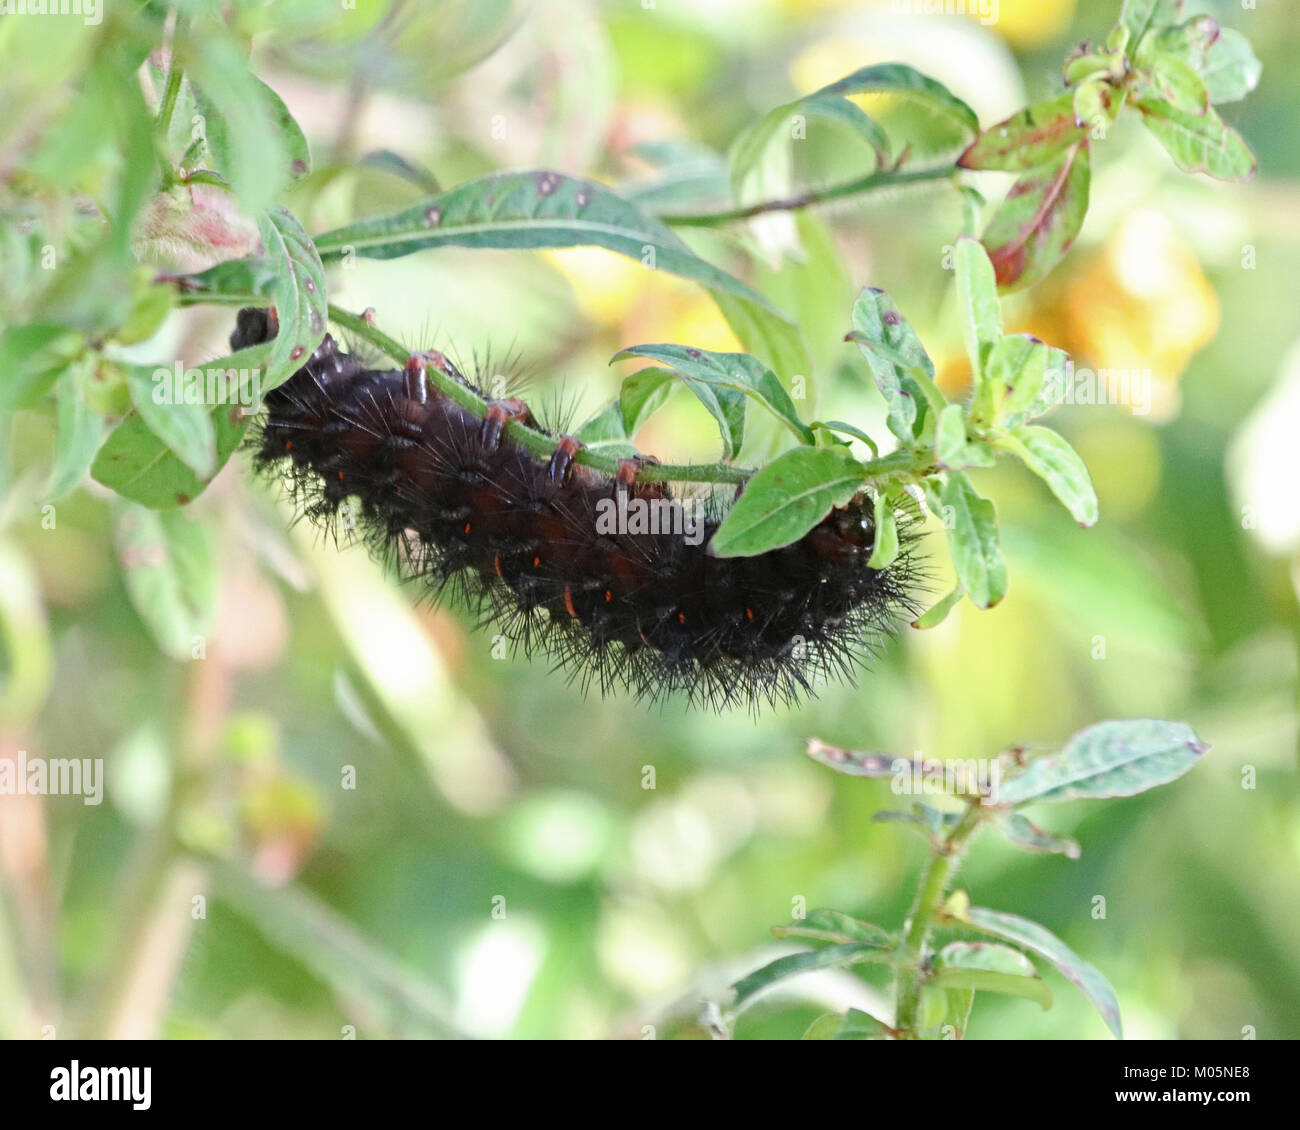 Eyed Tiger Moth Caterpillar rollt sich von Kopf bis Fuß, wenn zu diesem Zeitpunkt die Rote in zwischen den Segmenten Angst mehr spürbar. Stockfoto